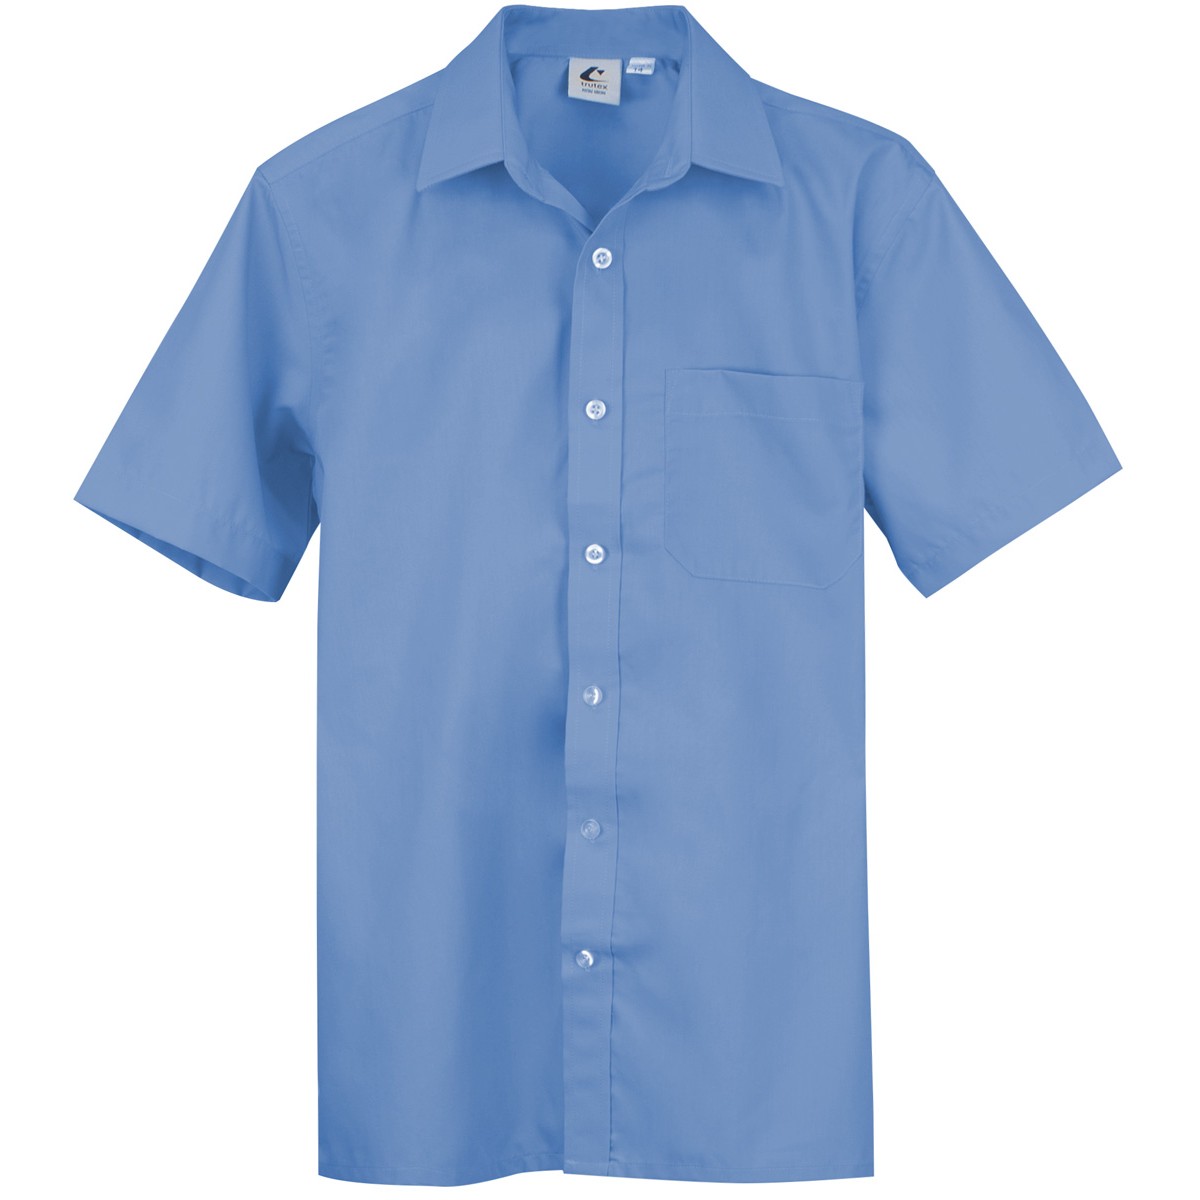 Boys Shirt Short Sleeve - Dark Blue 2 Pack - School Locker